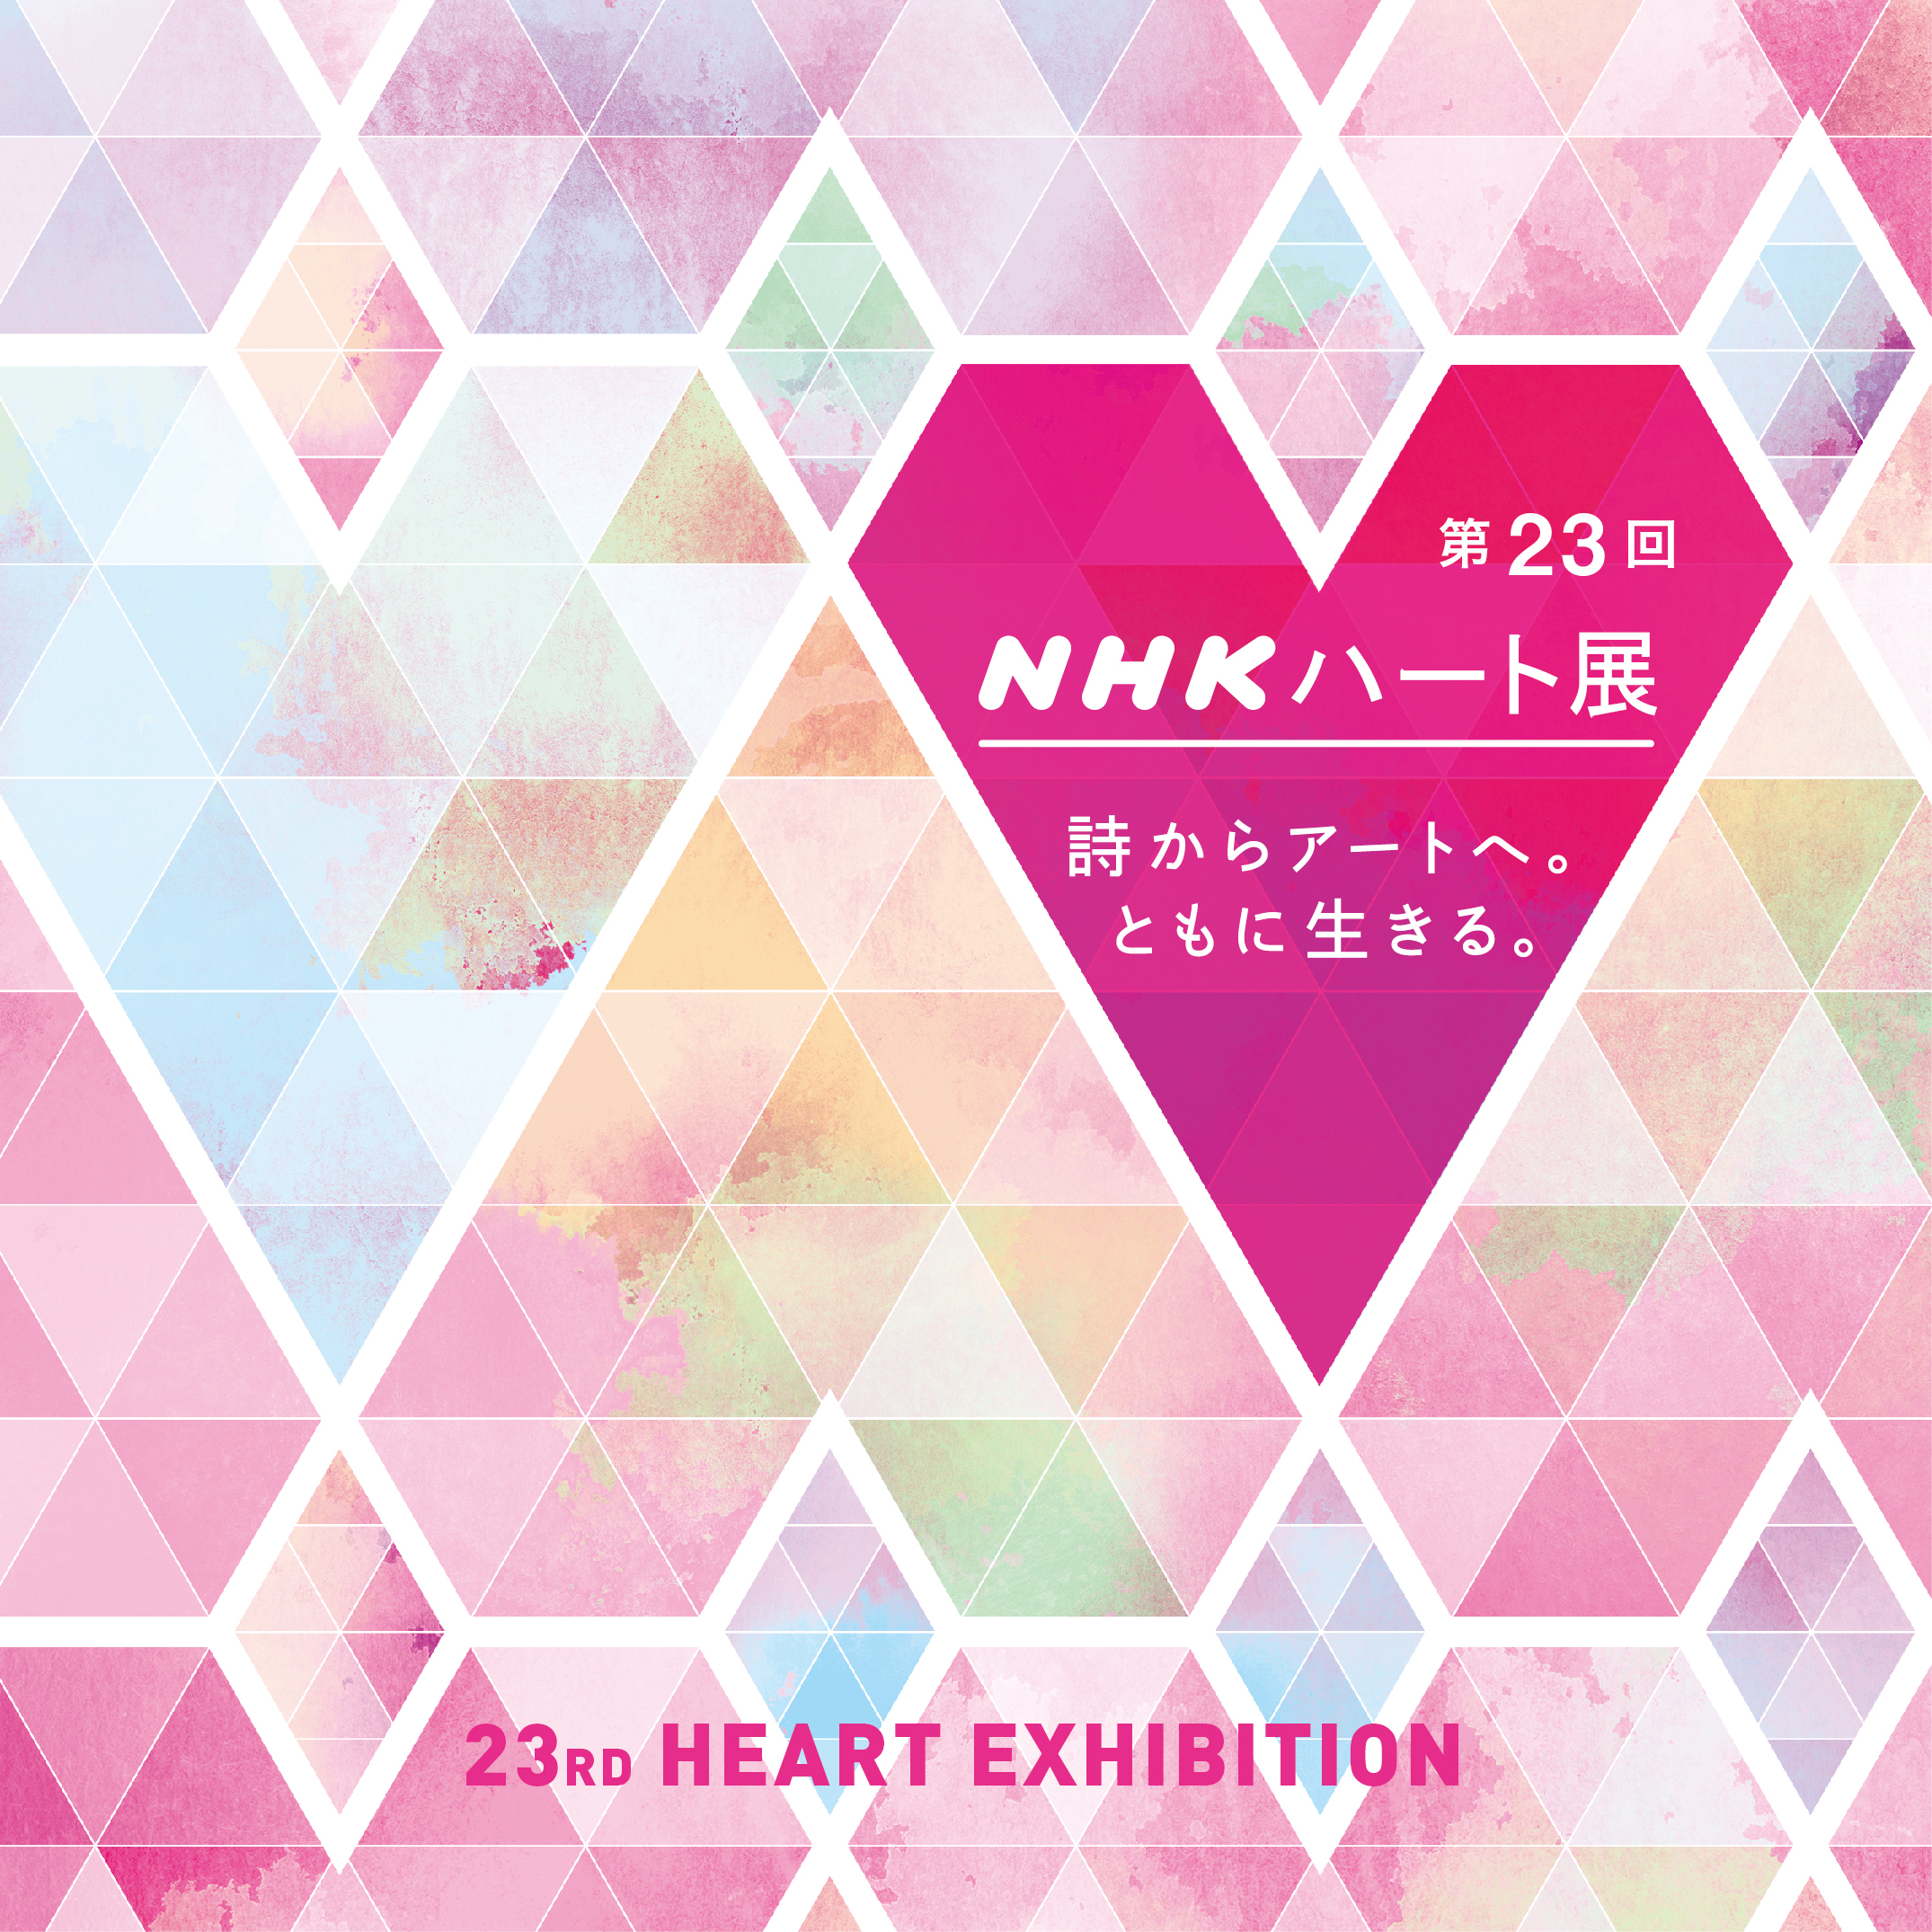 50編の詩とアートが出会って生まれる新たな世界 Nhkハート展 東京展開催 ｎｈｋ事業センターのプレスリリース